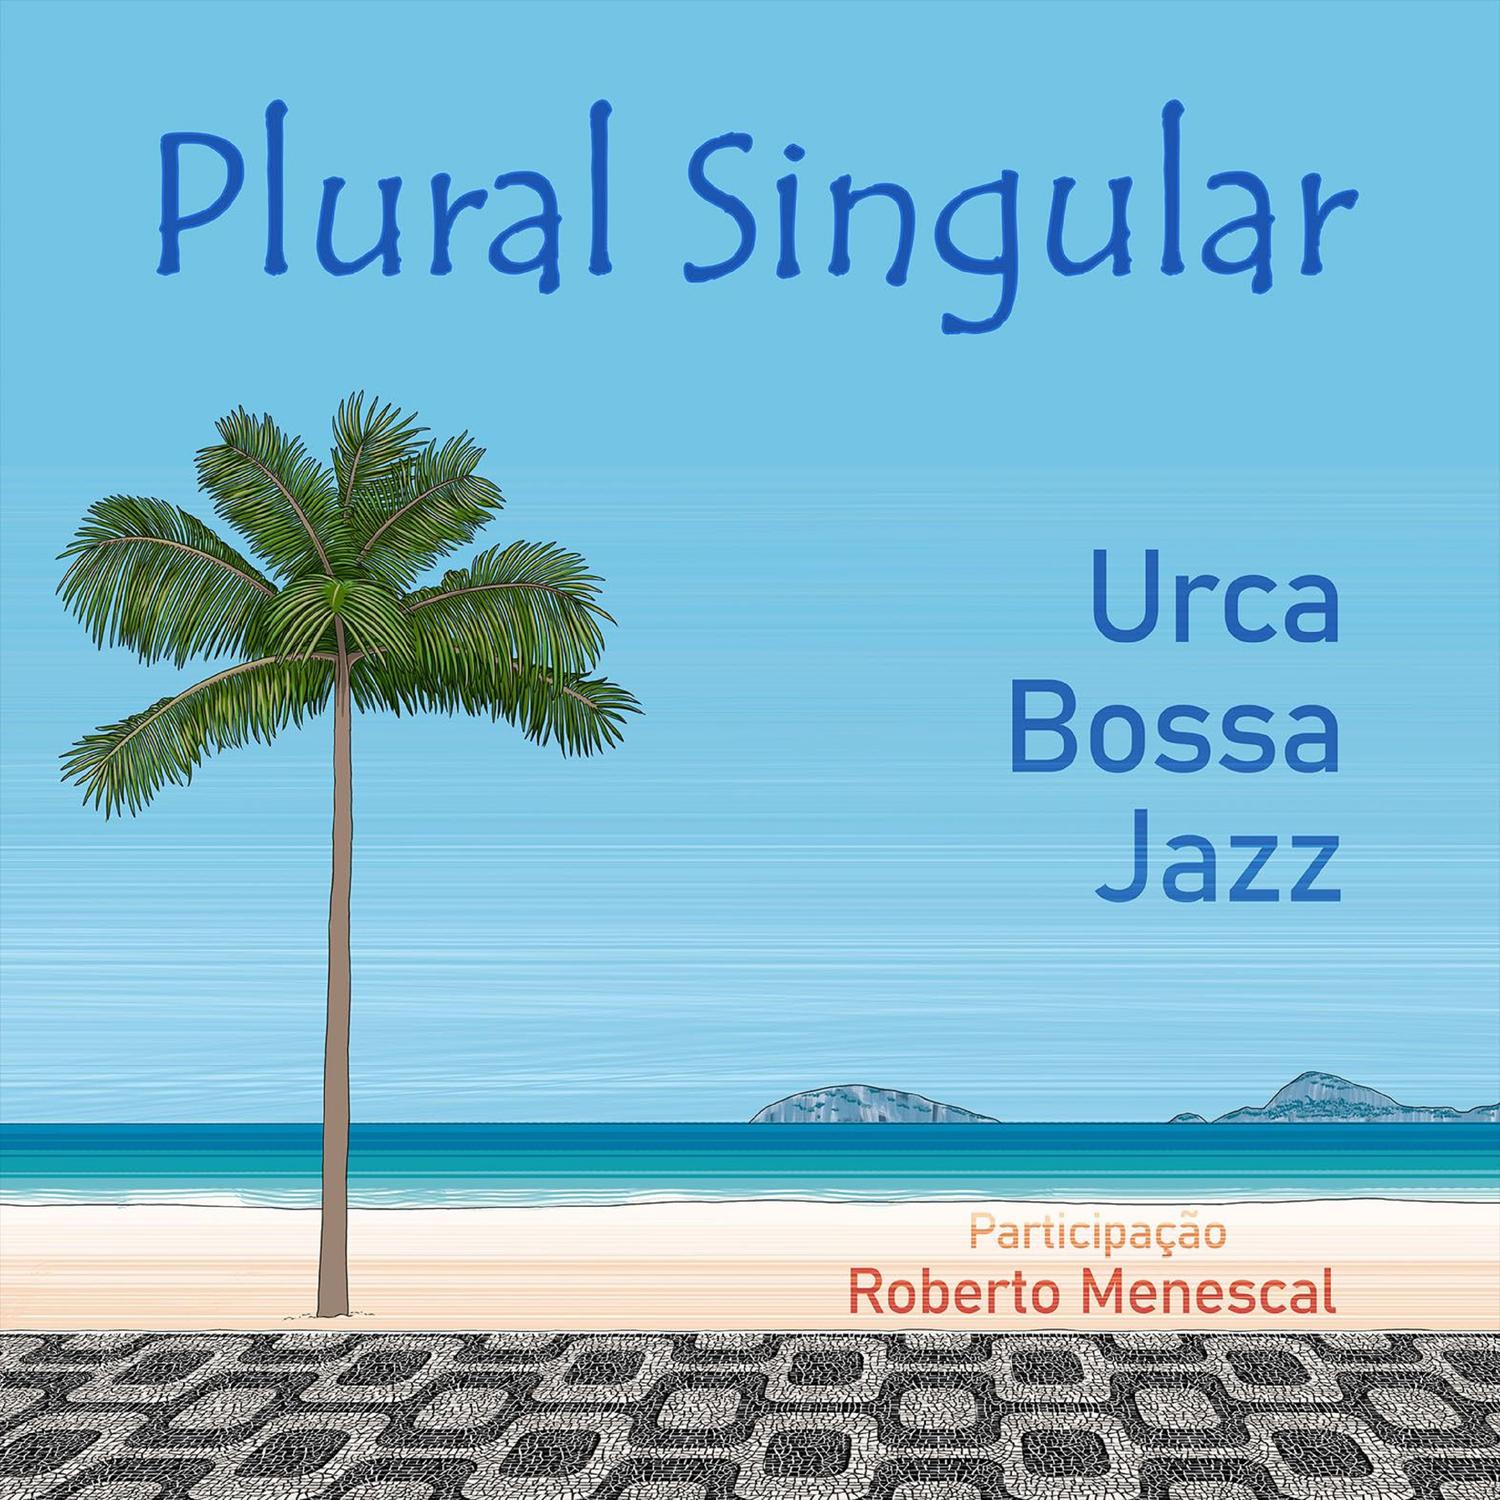 Urca Bossa Jazz - Plural Singular